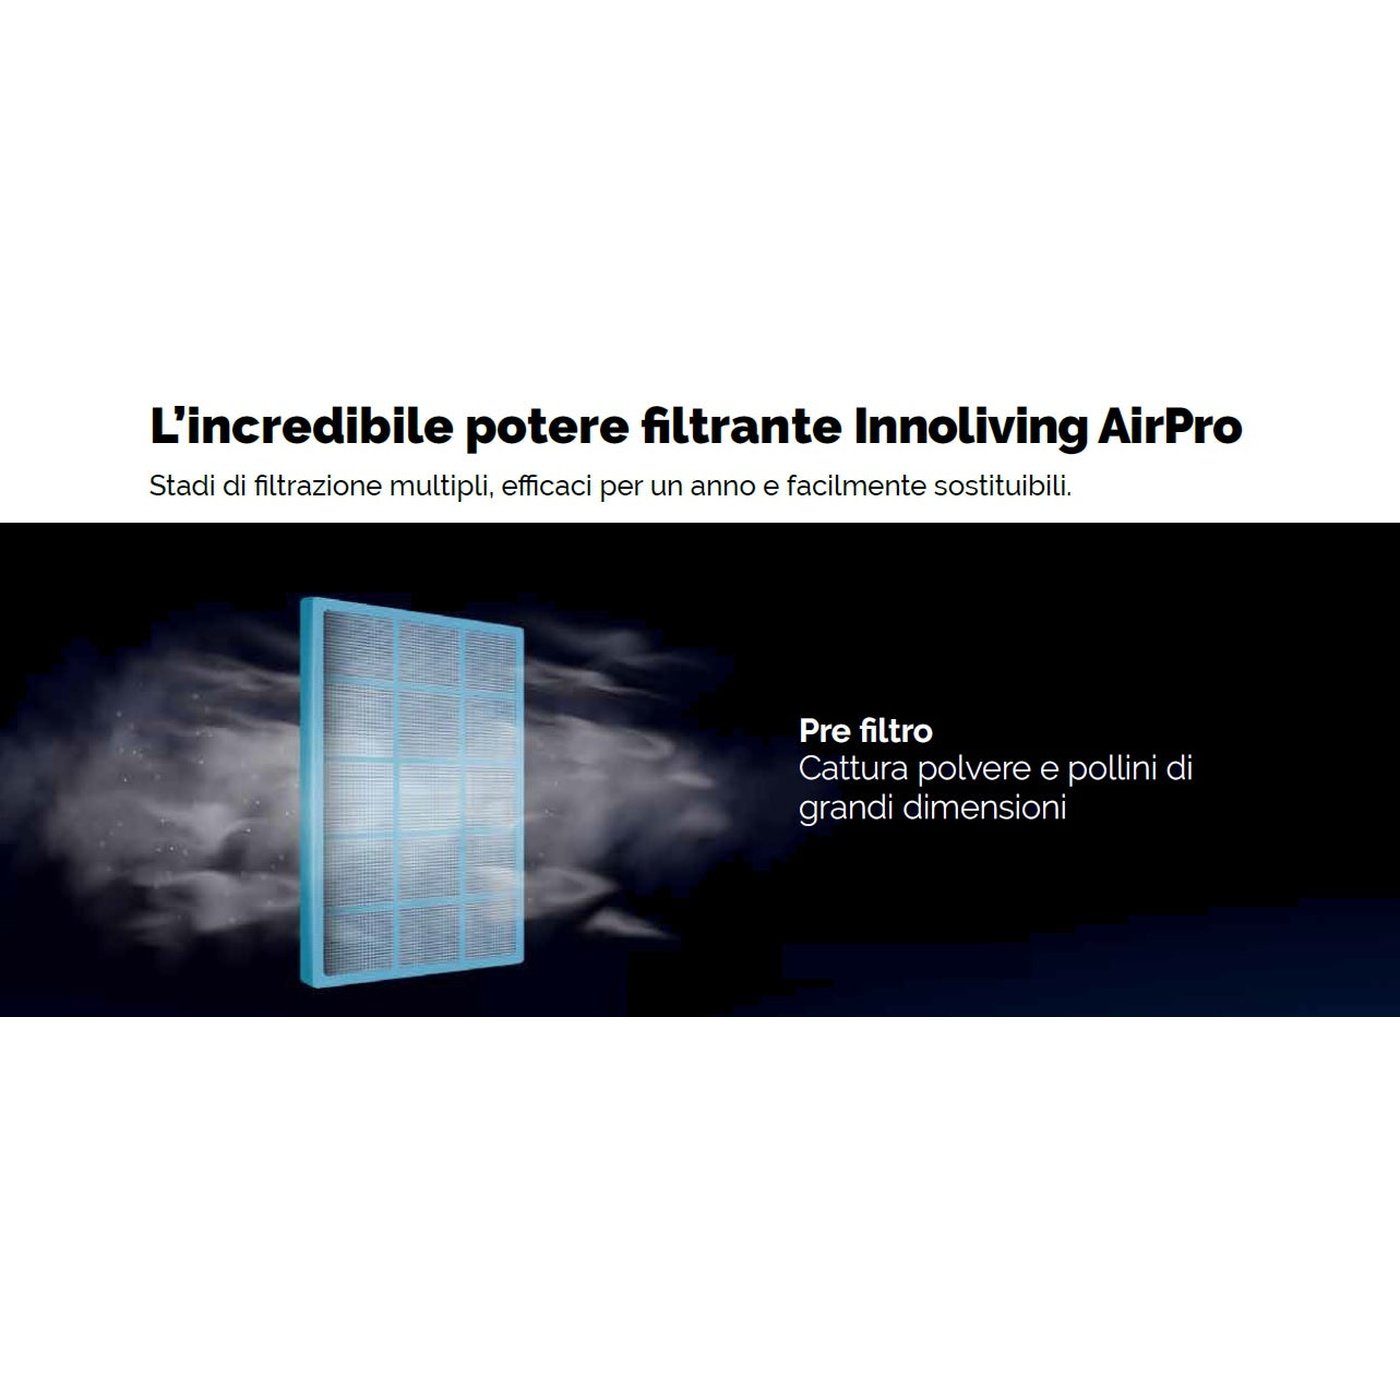 Purificatore d'aria Professional Plus filtro HEPA, Ioni negativi, PM 2.5 Smart Wi-fi Innoliving Airpro INN-557